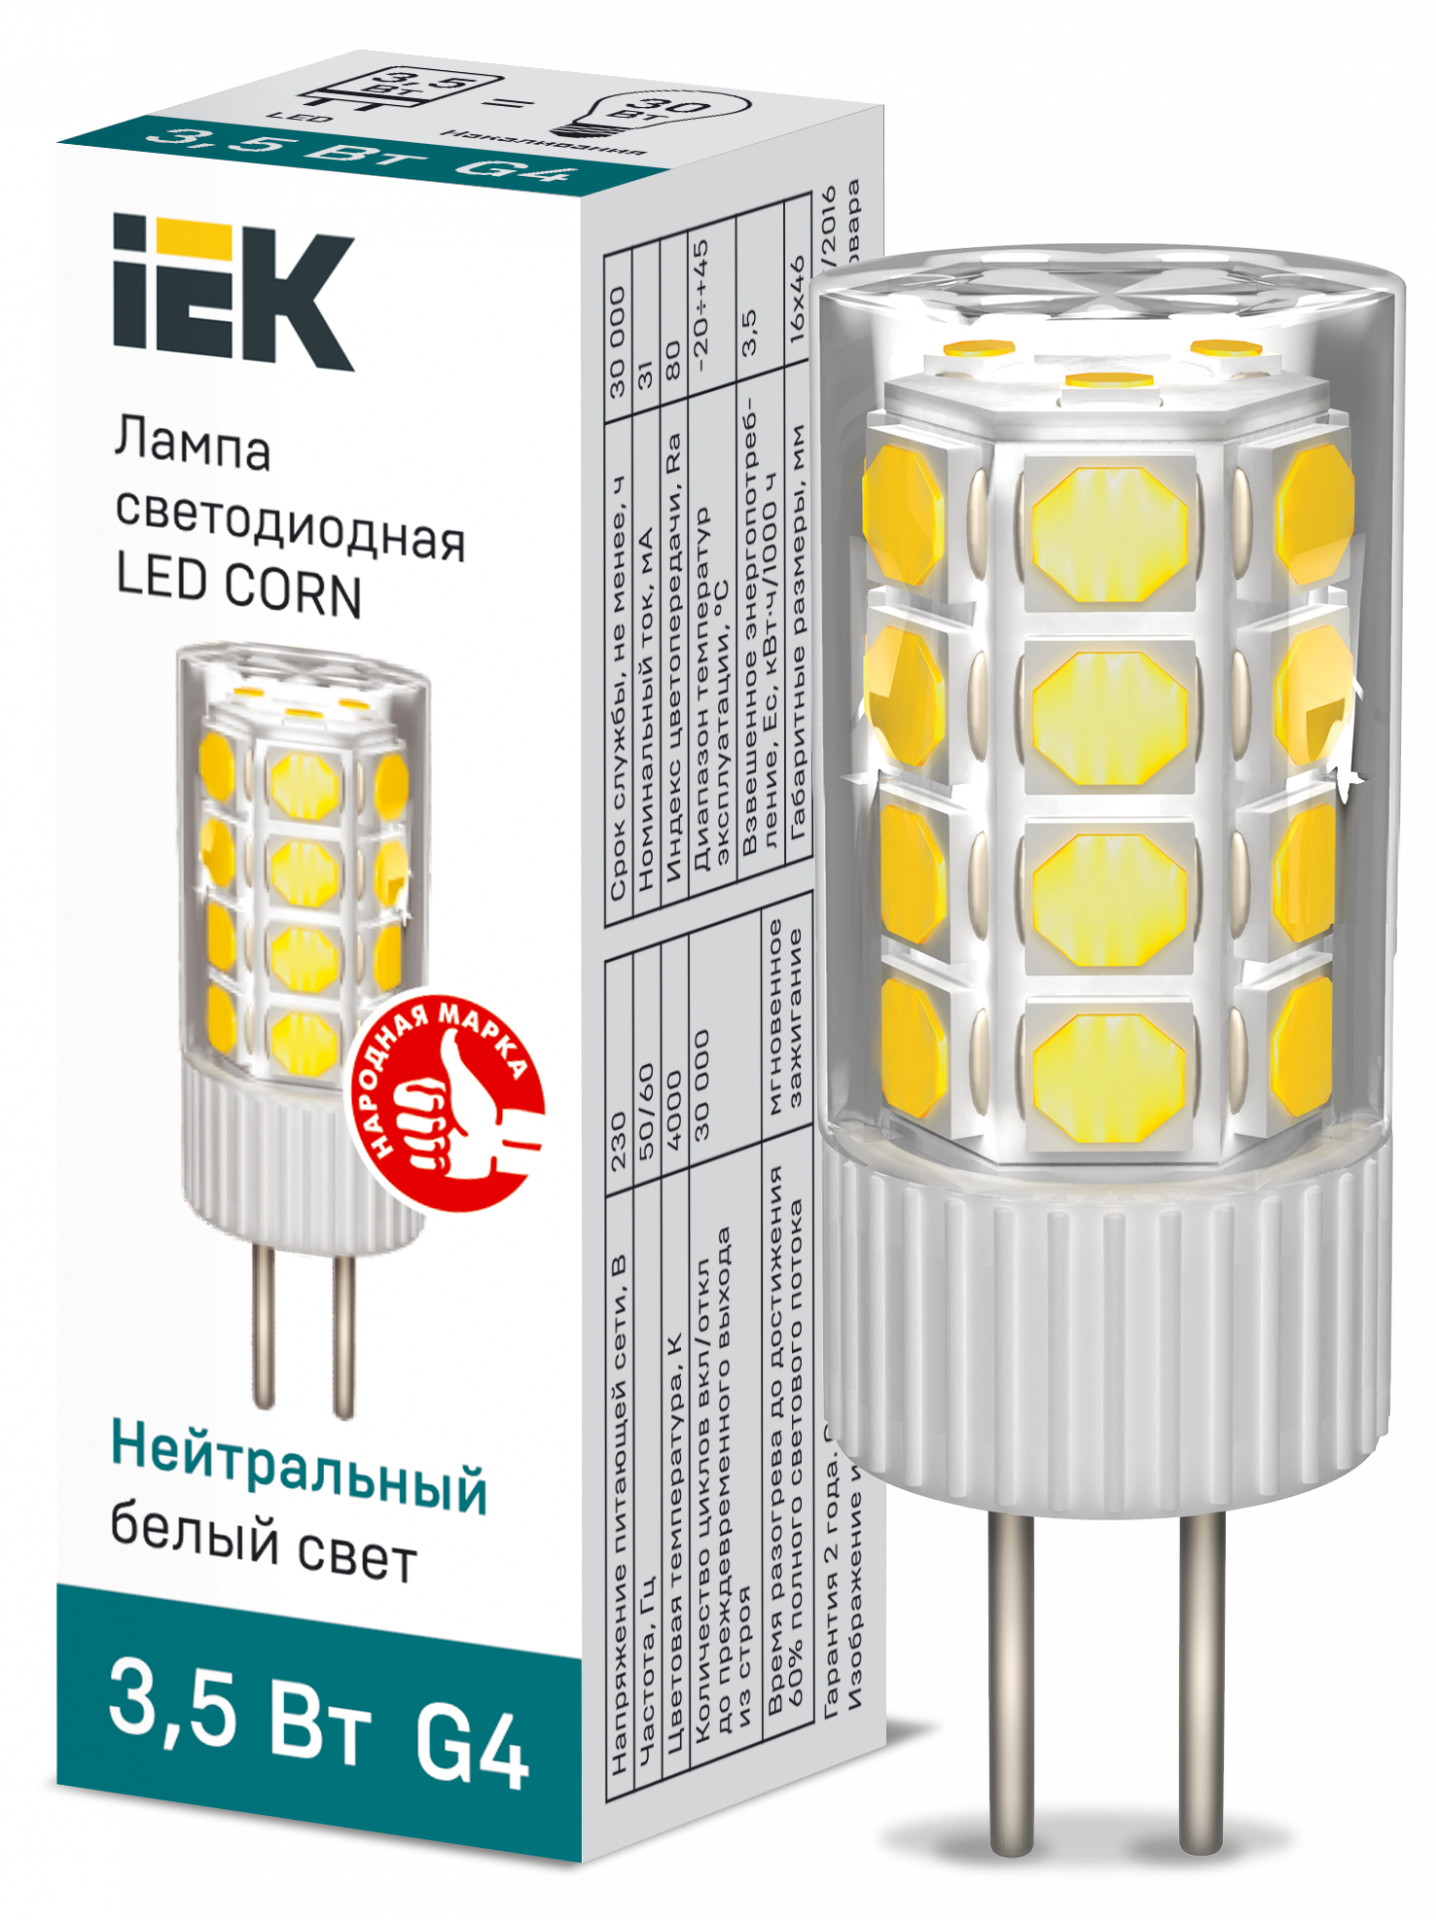 Лампа Светодиодная CORN капсула 3,5Вт 230В 4000К керамика G4, IEK LLE-CORN-4-230-40-G4 (10 шт.)